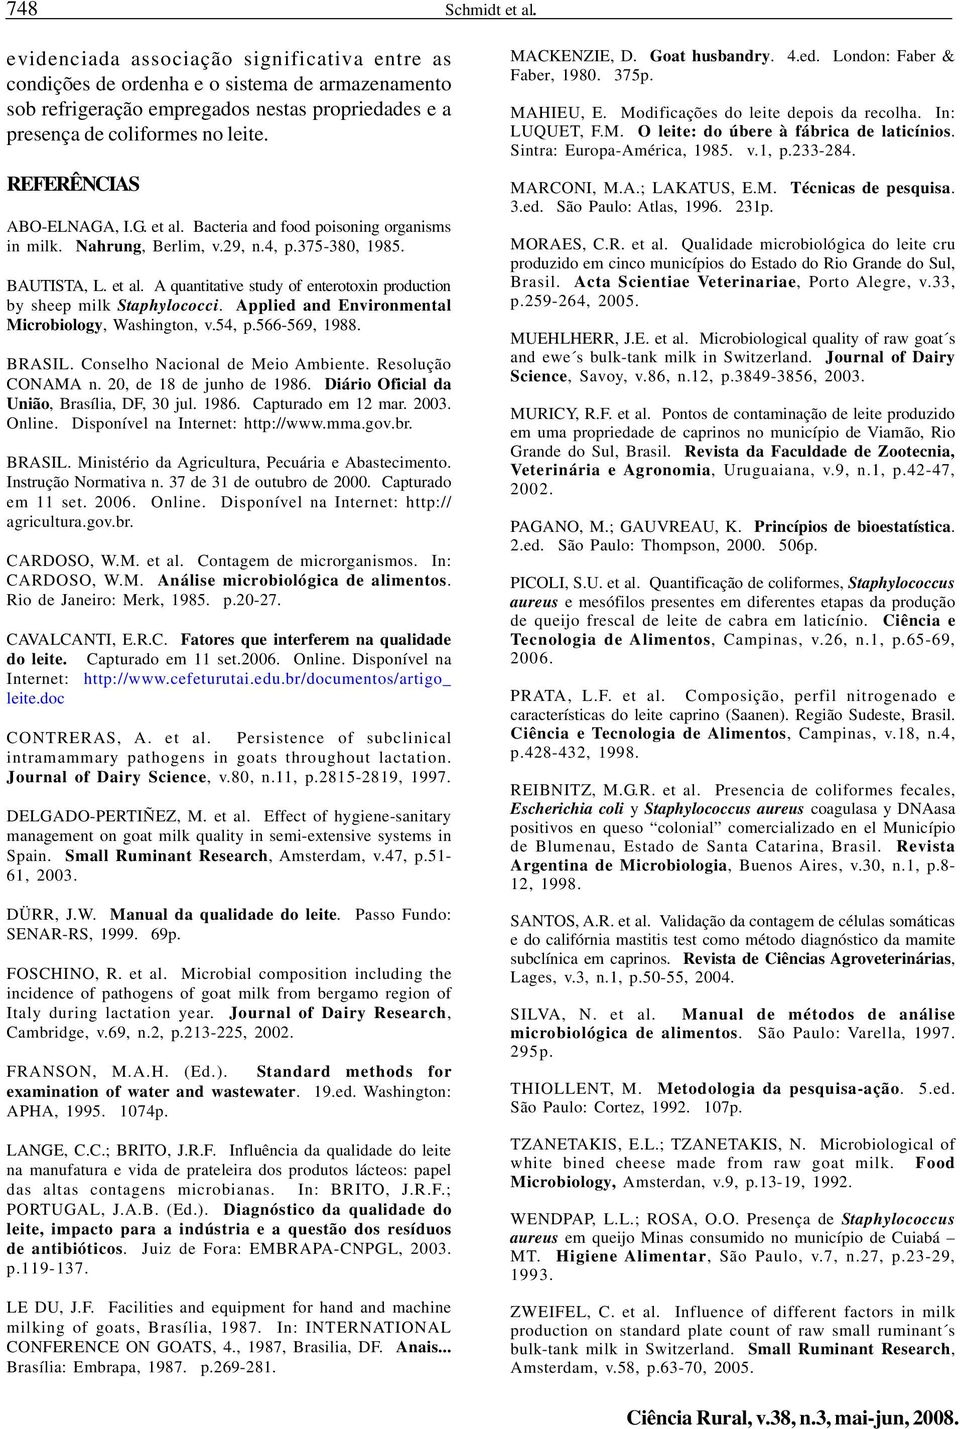 Applied and Environmental Microbiology, Washington, v.54, p.566-569, 1988. BRASIL. Conselho Nacional de Meio Ambiente. Resolução CONAMA n. 20, de 18 de junho de 1986.